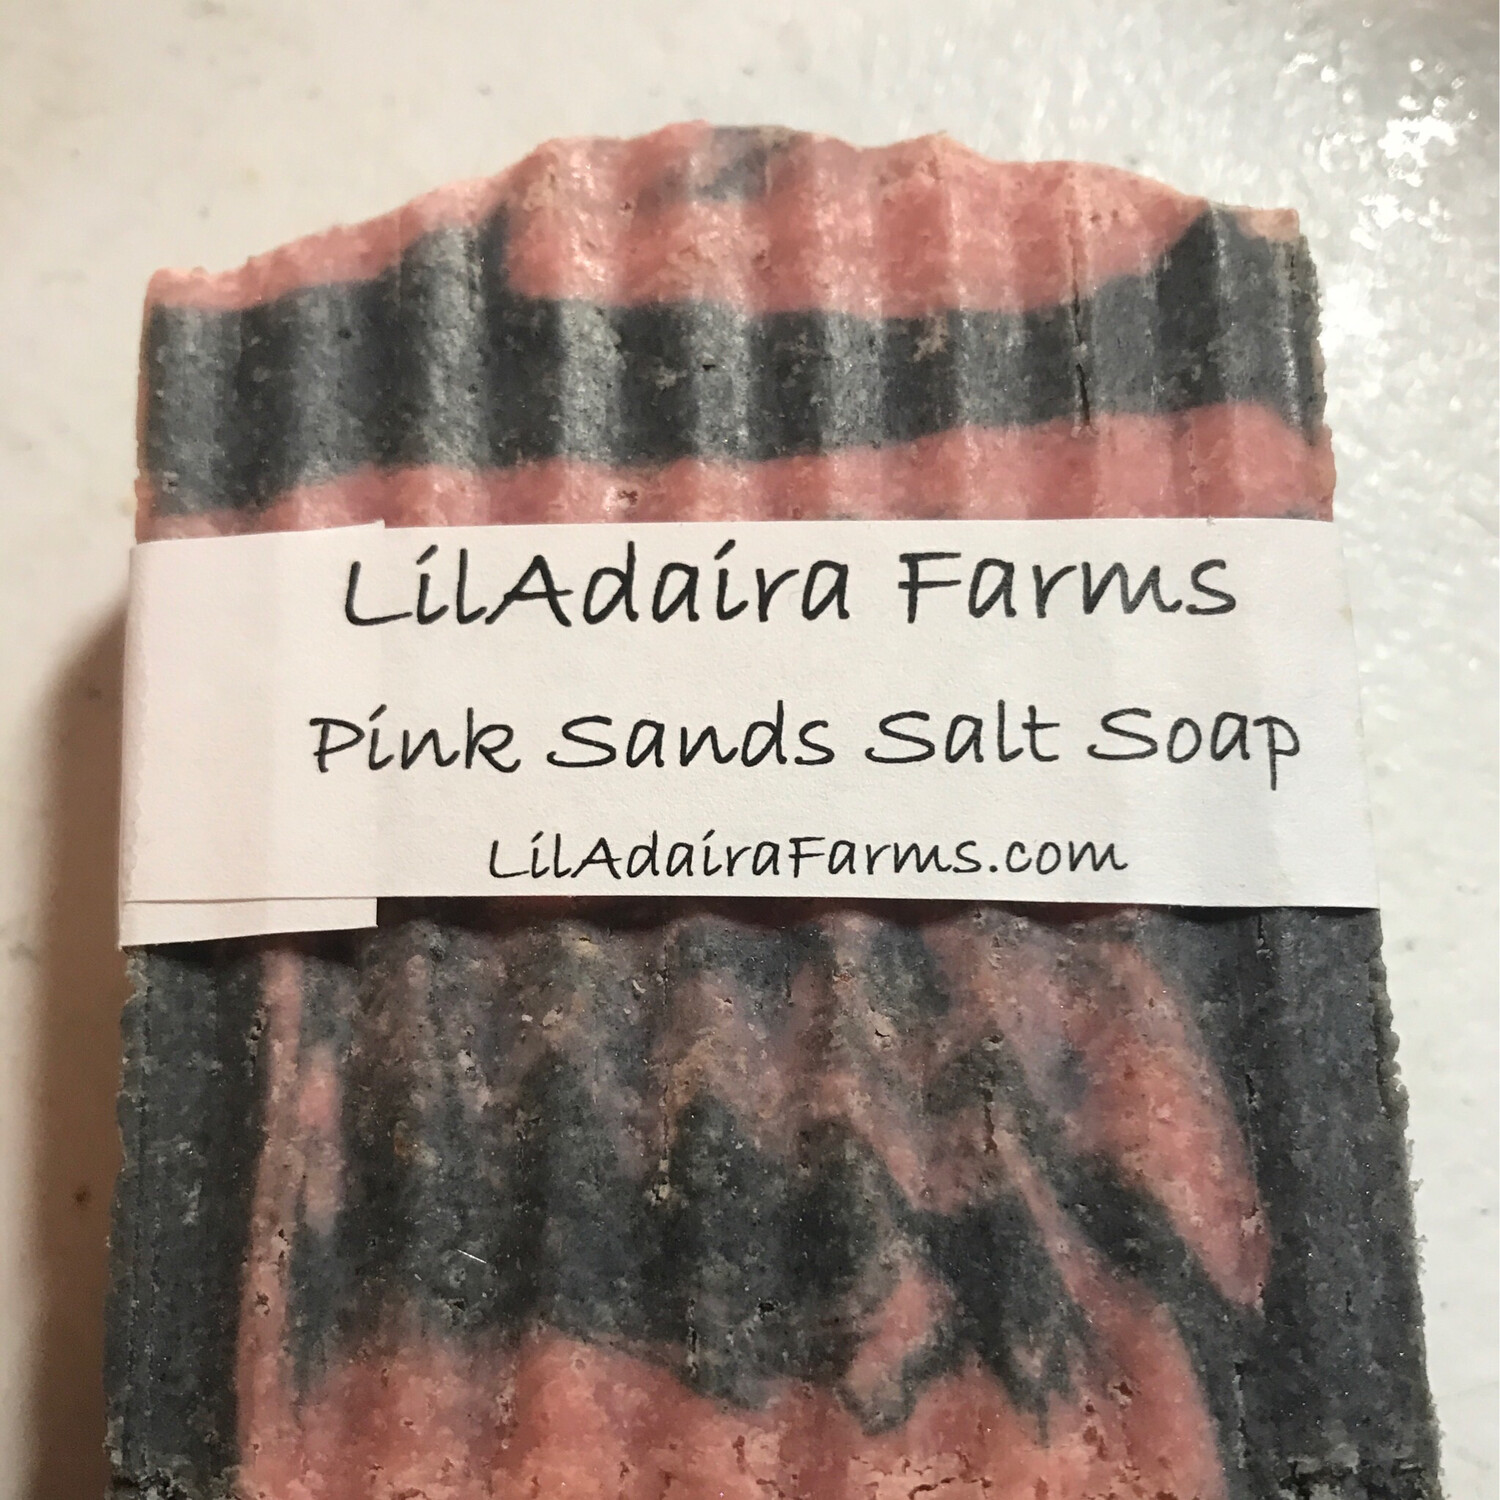 Pink Sands Salt Soap